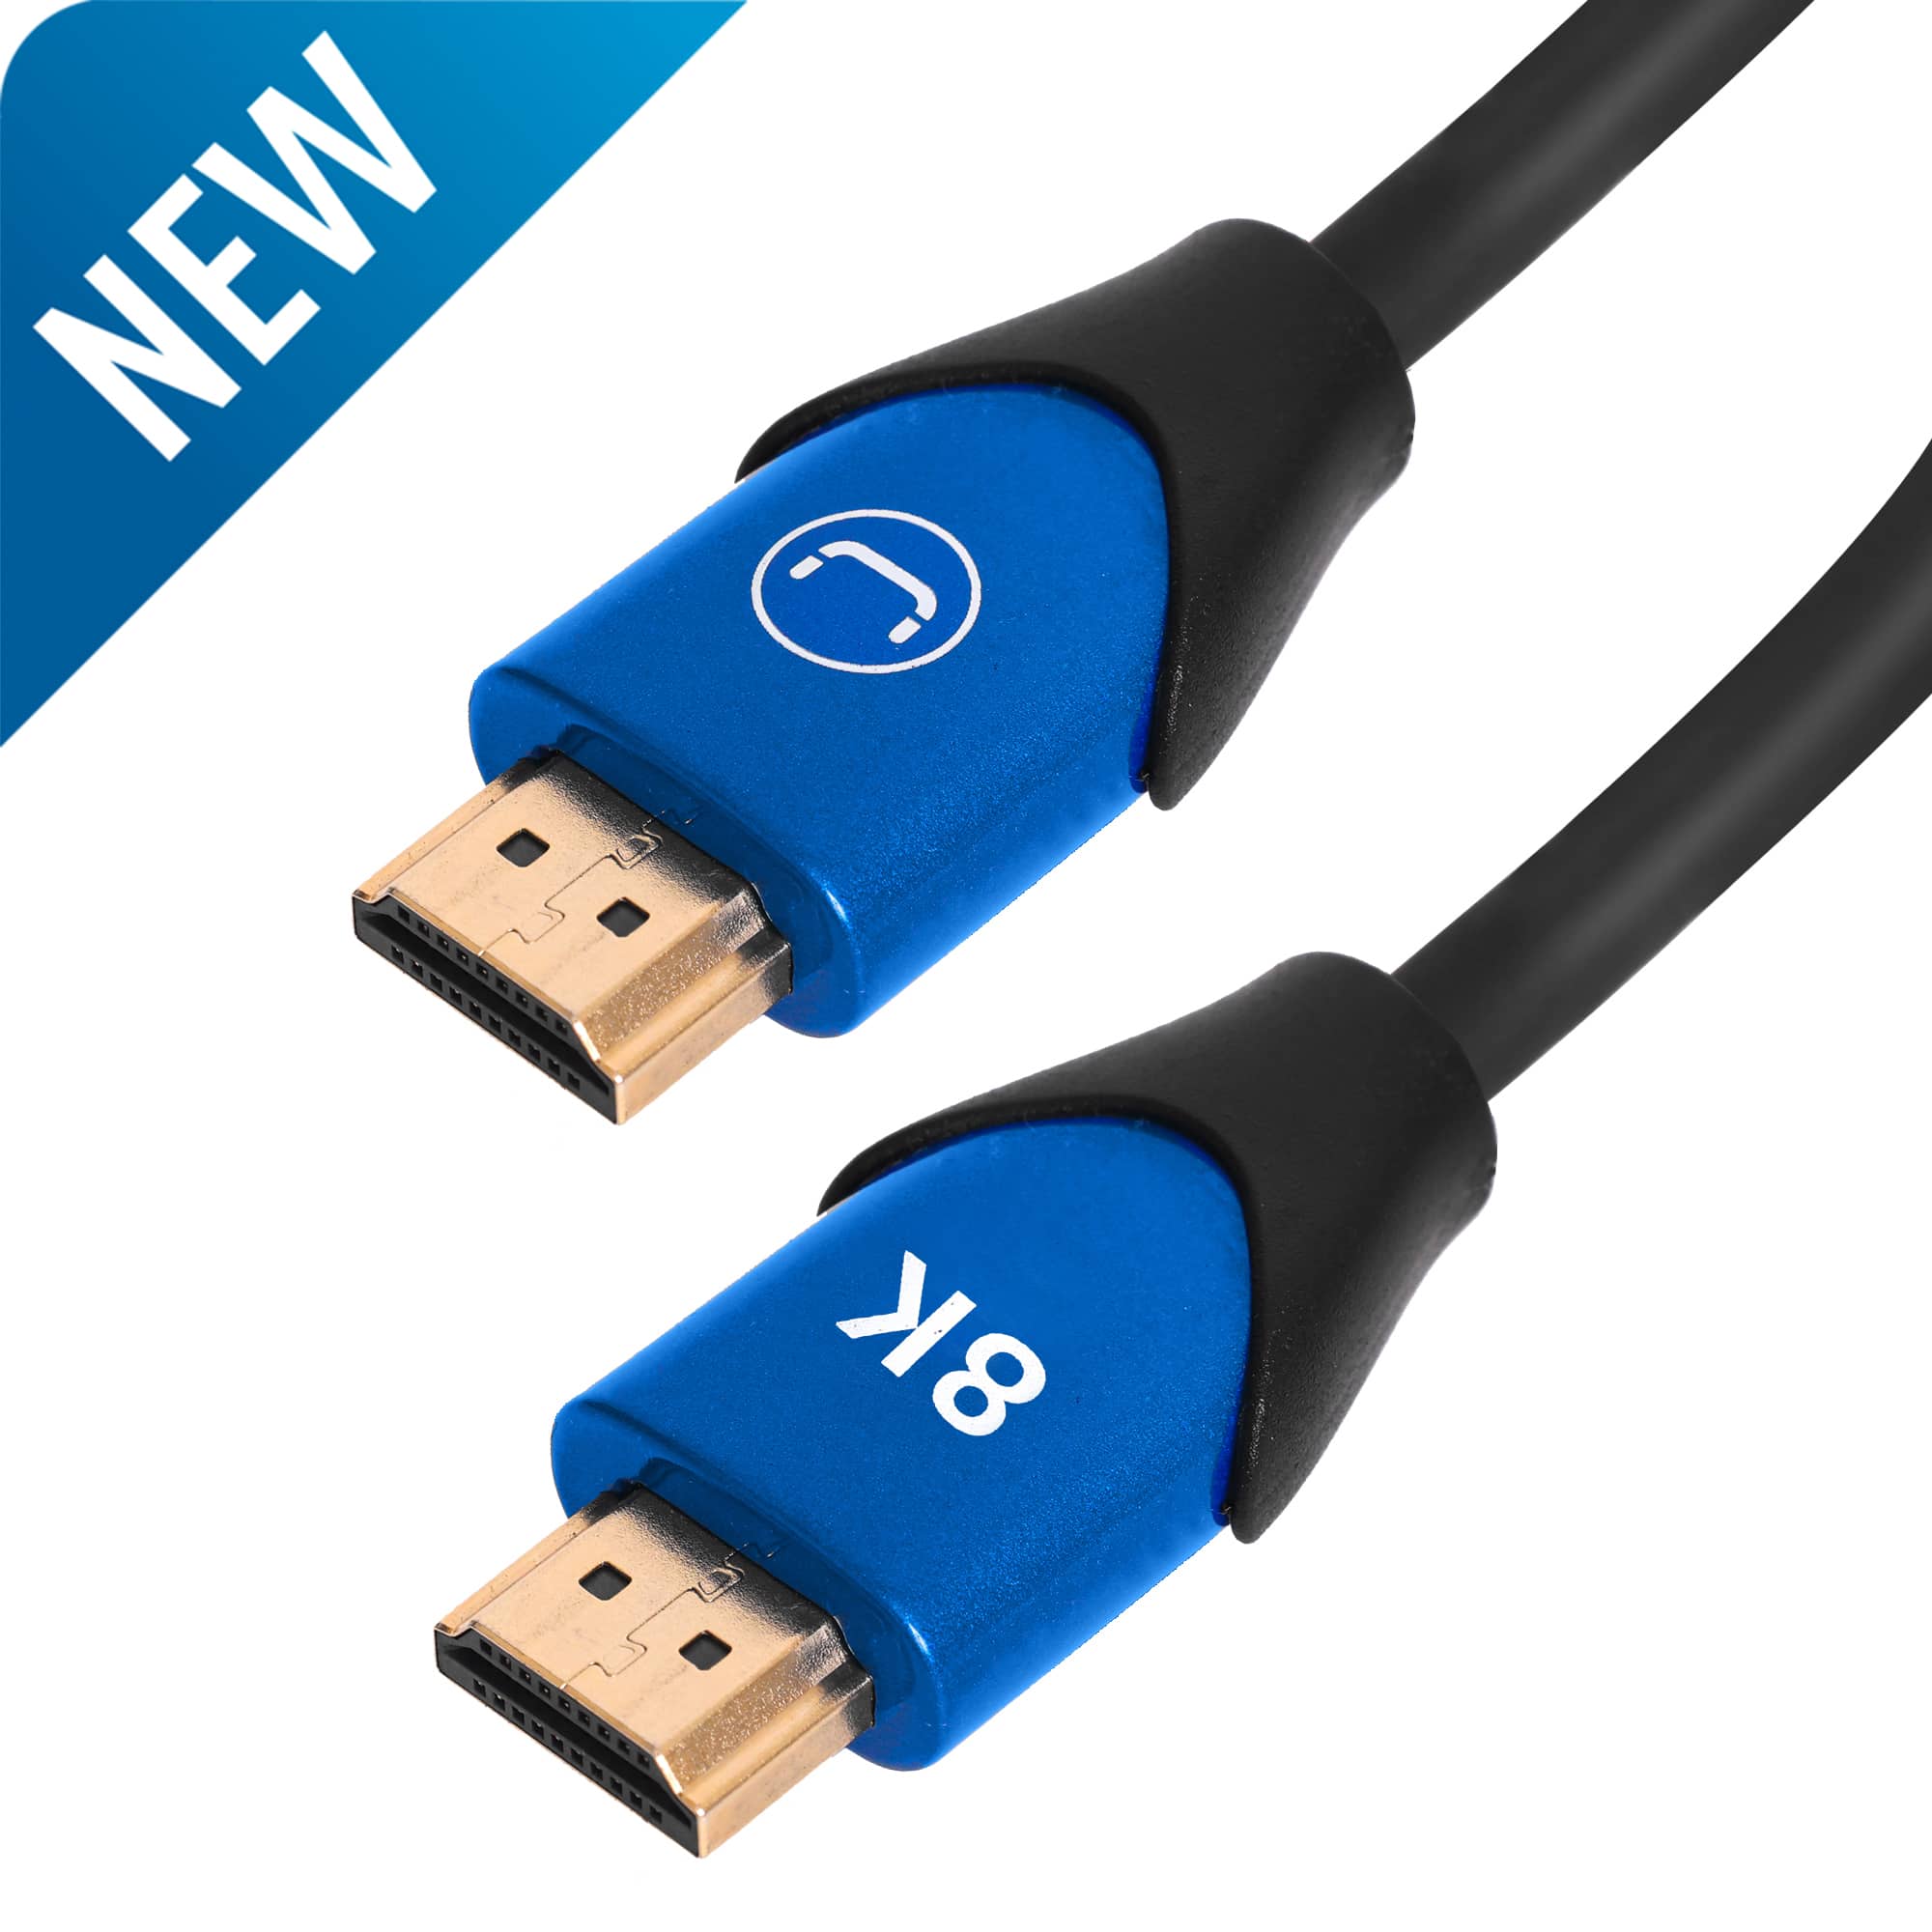 HDMI 2.1 8k Cable Trinidad